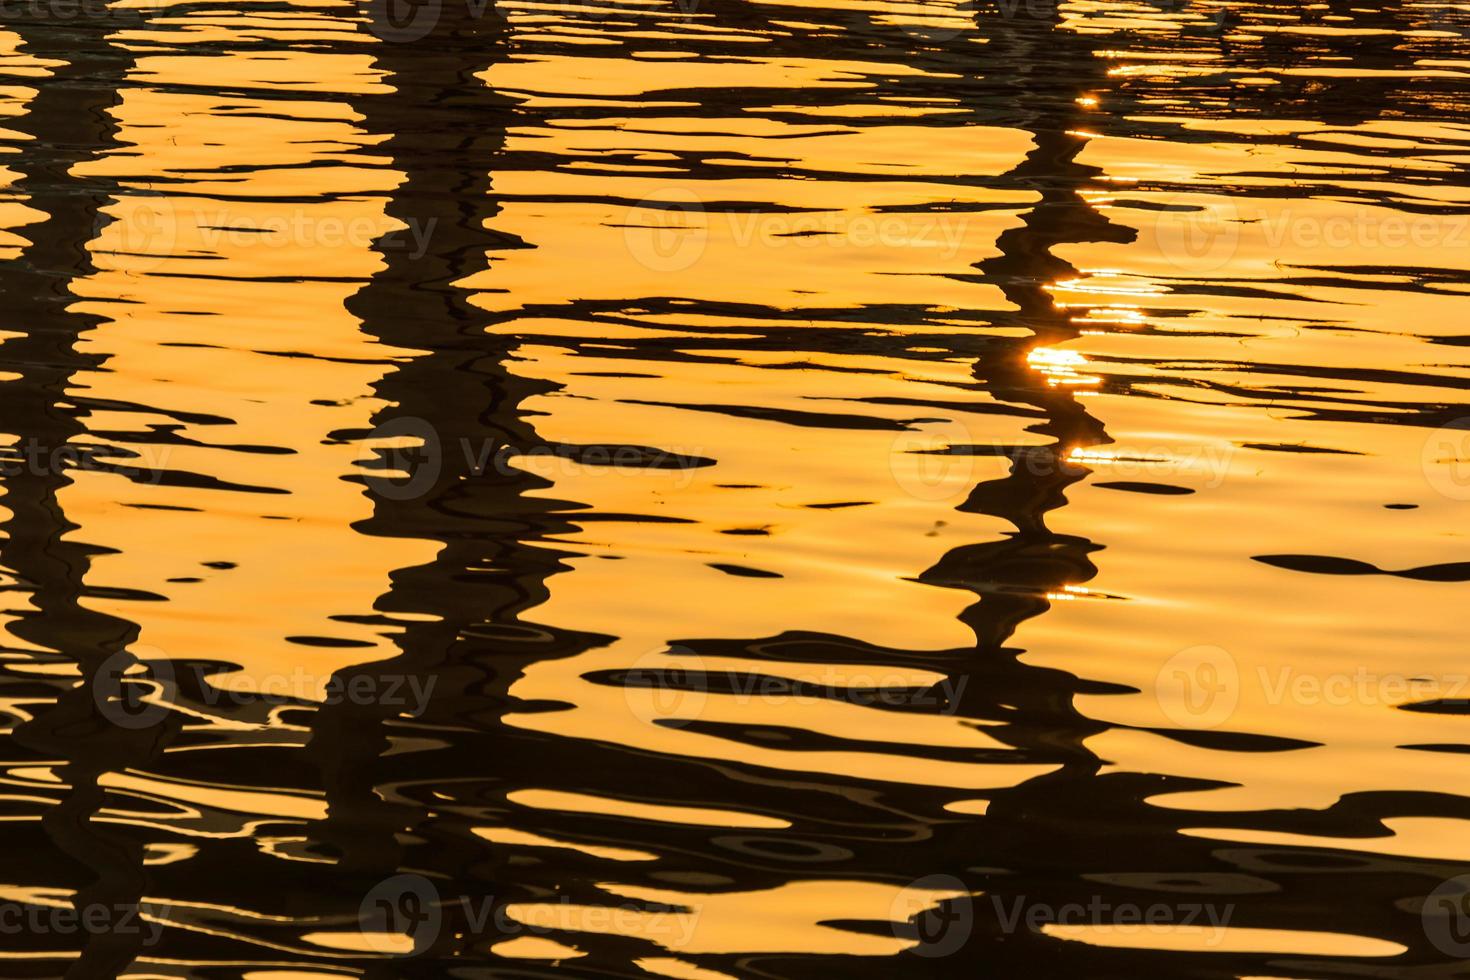 superficie del agua con reflejos de luz brillantes foto